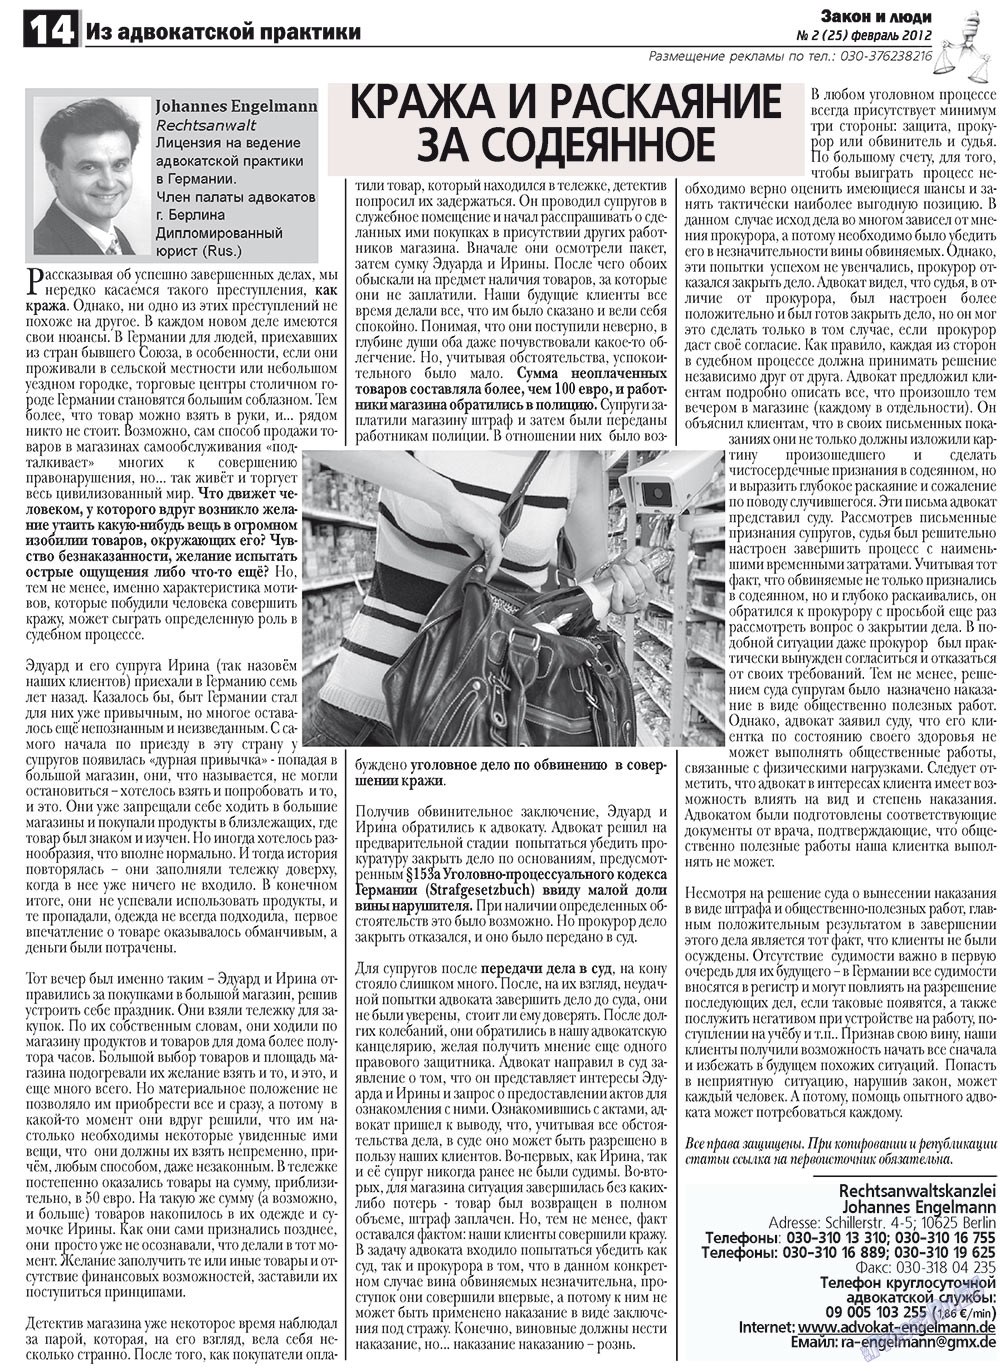 Закон и люди, газета. 2012 №2 стр.14